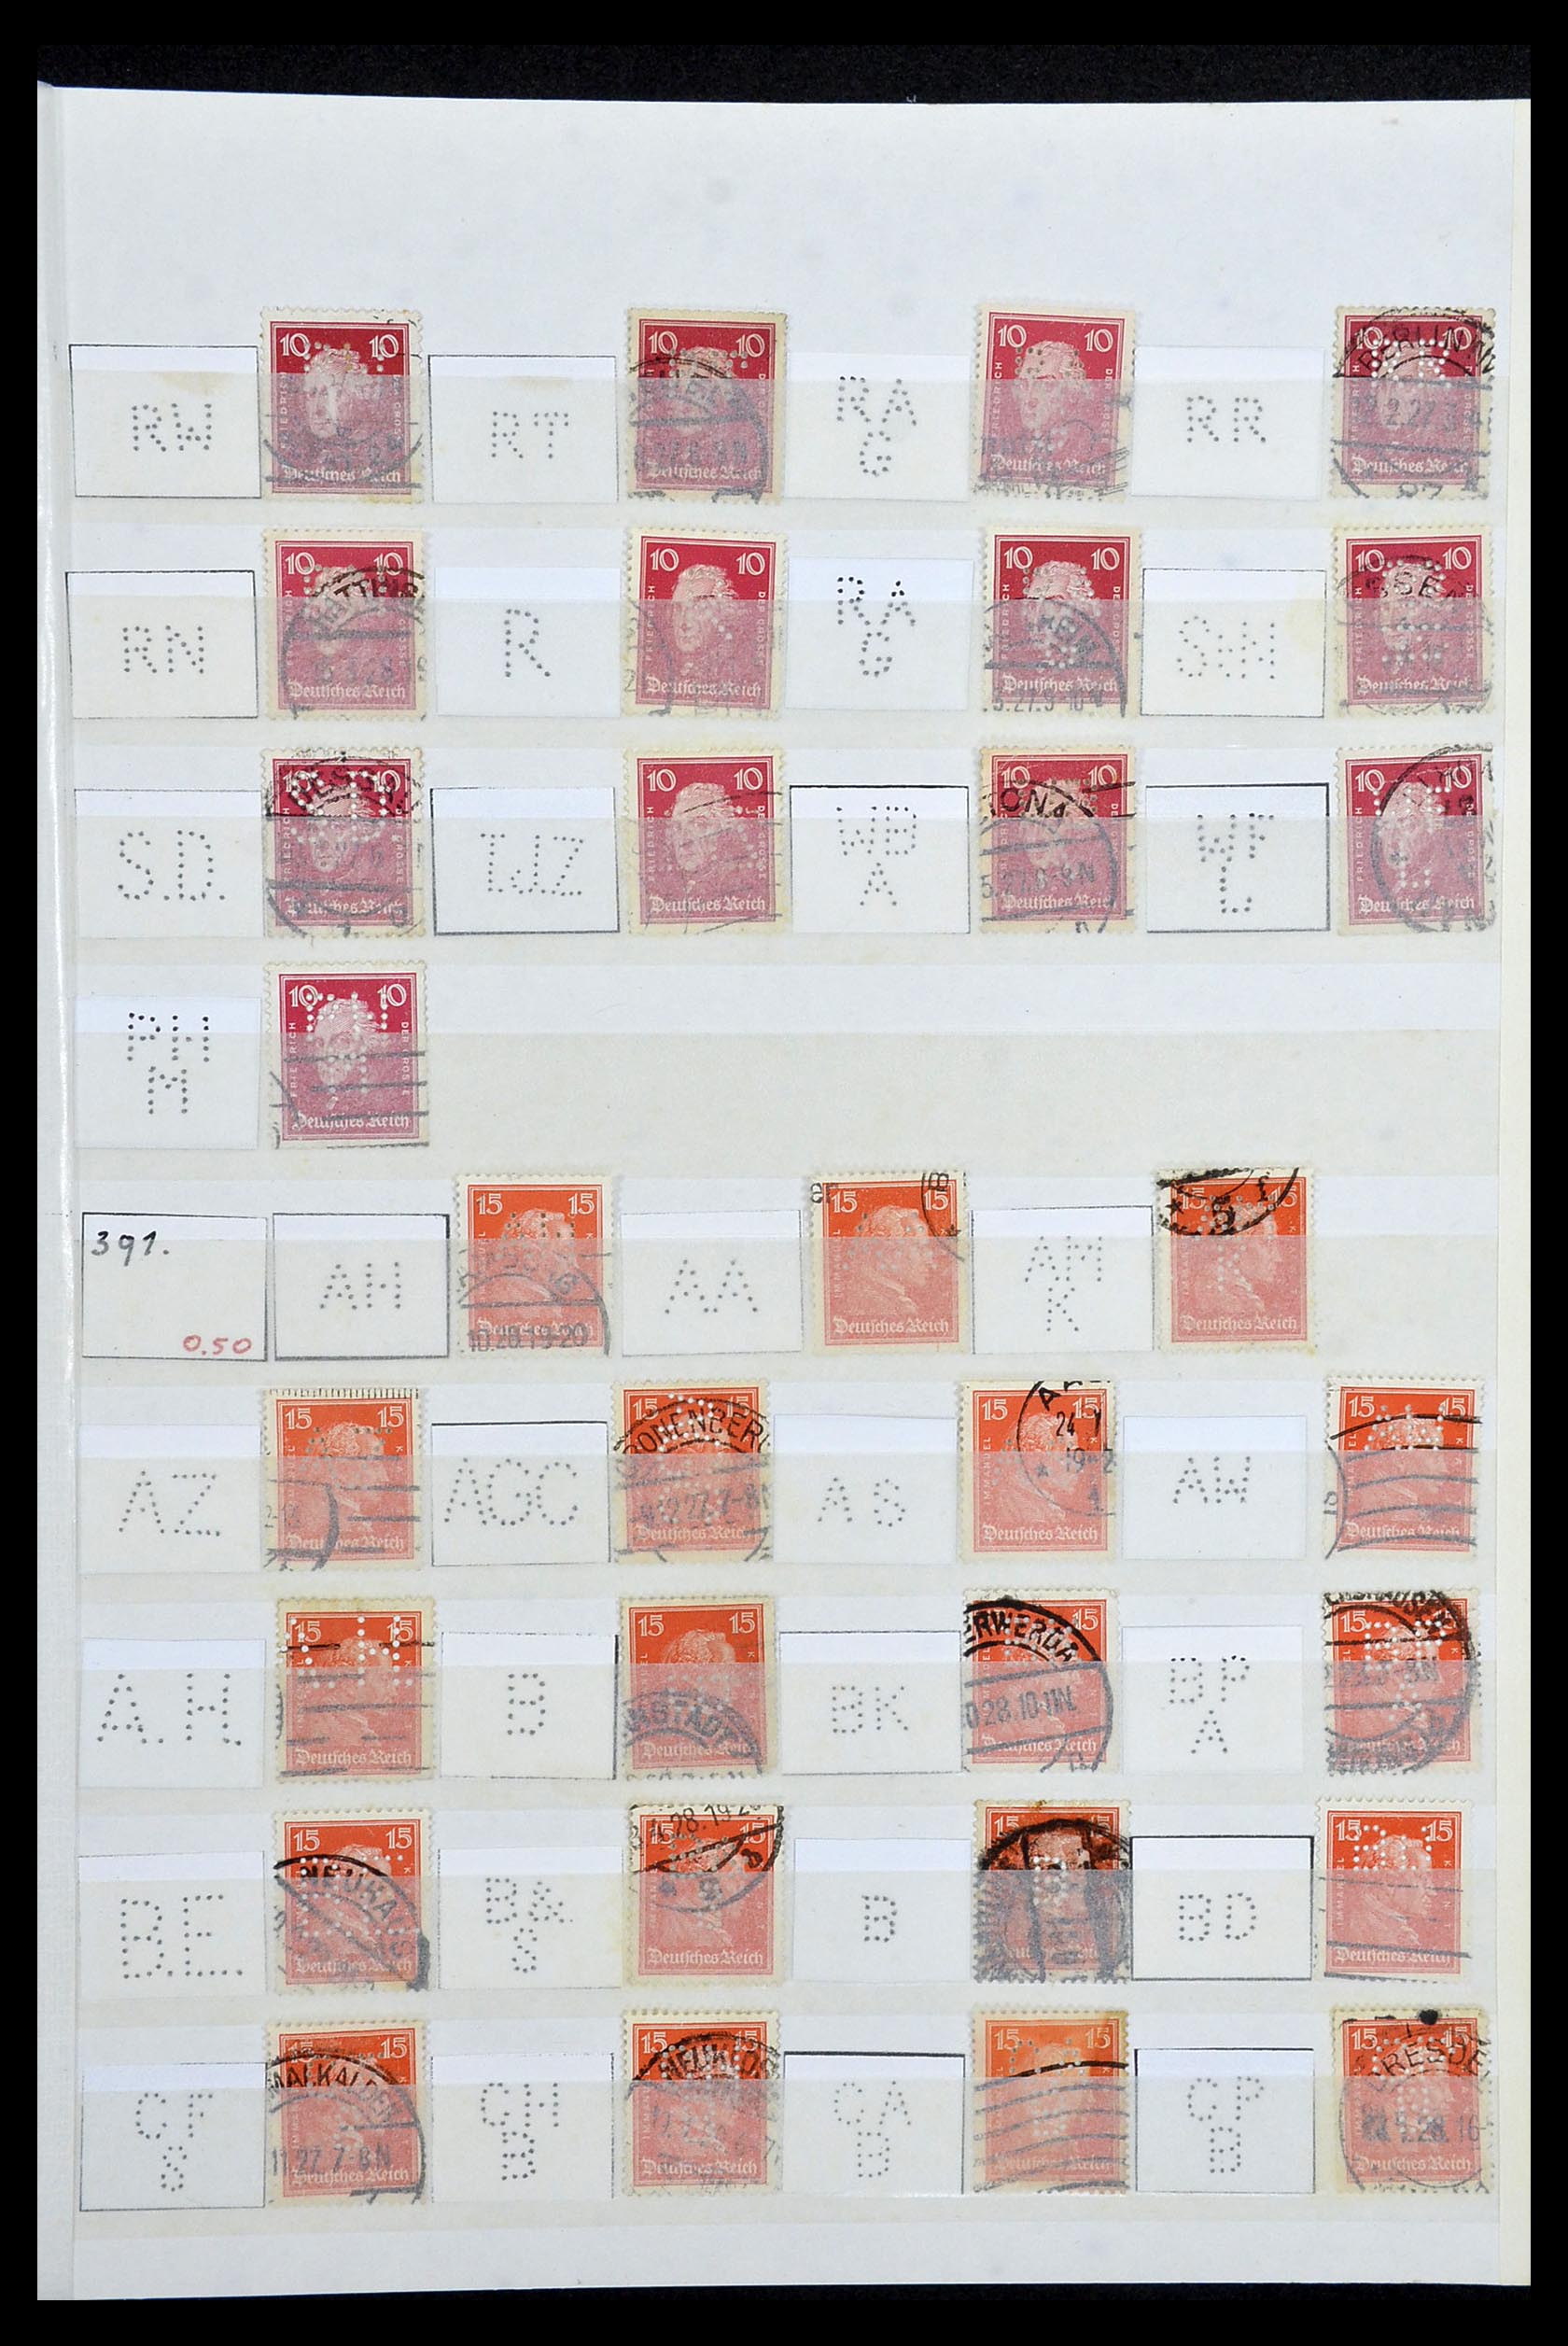 34071 003 - Stamp collection 34071 German Reich perfins 1923-1930.